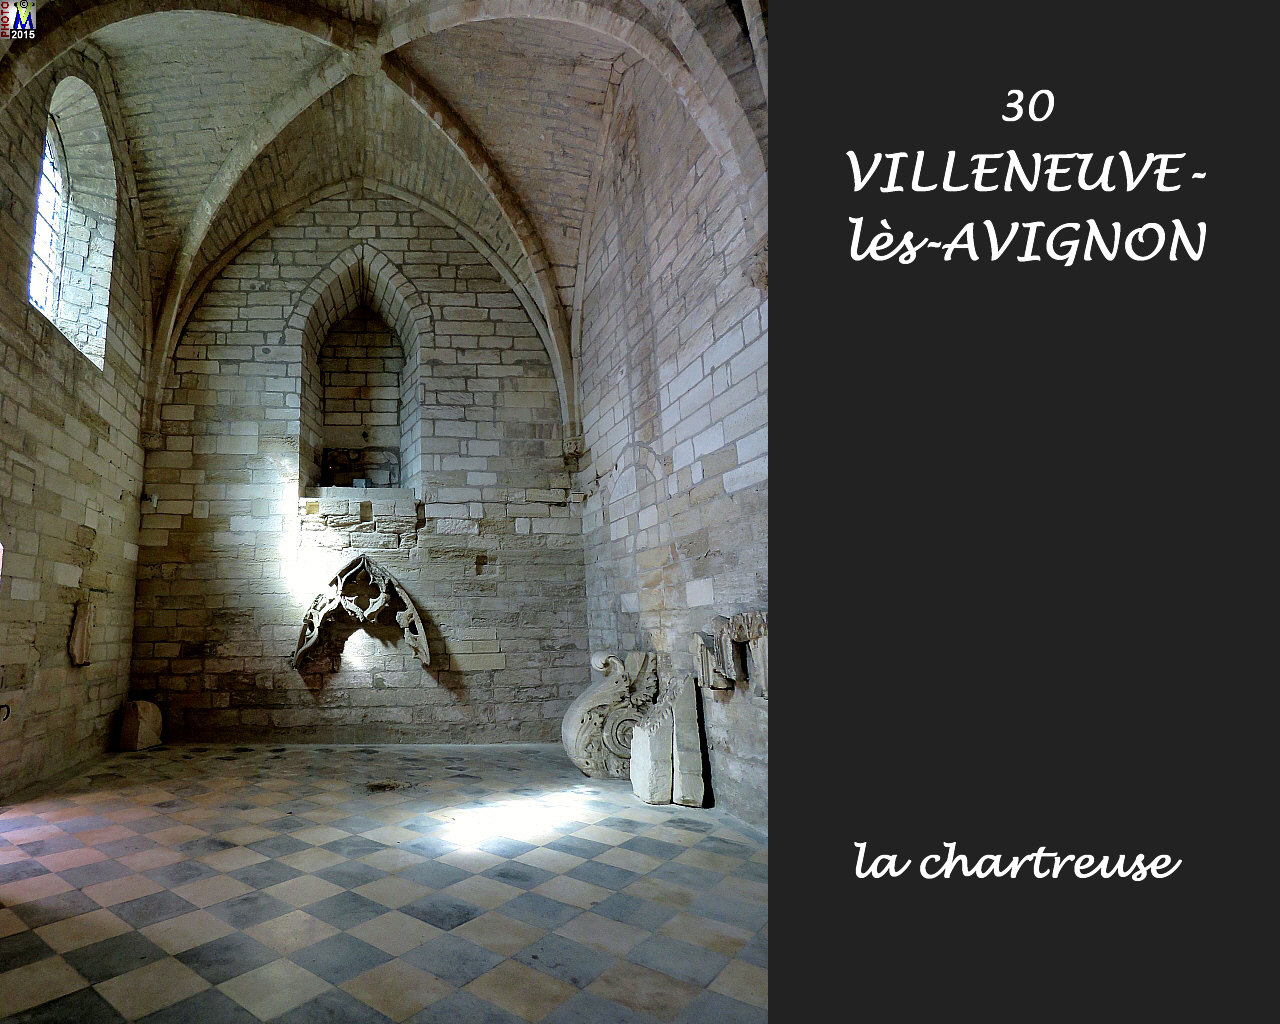 30VILLENEUVE-AVIGNON_chartreuse_206.jpg